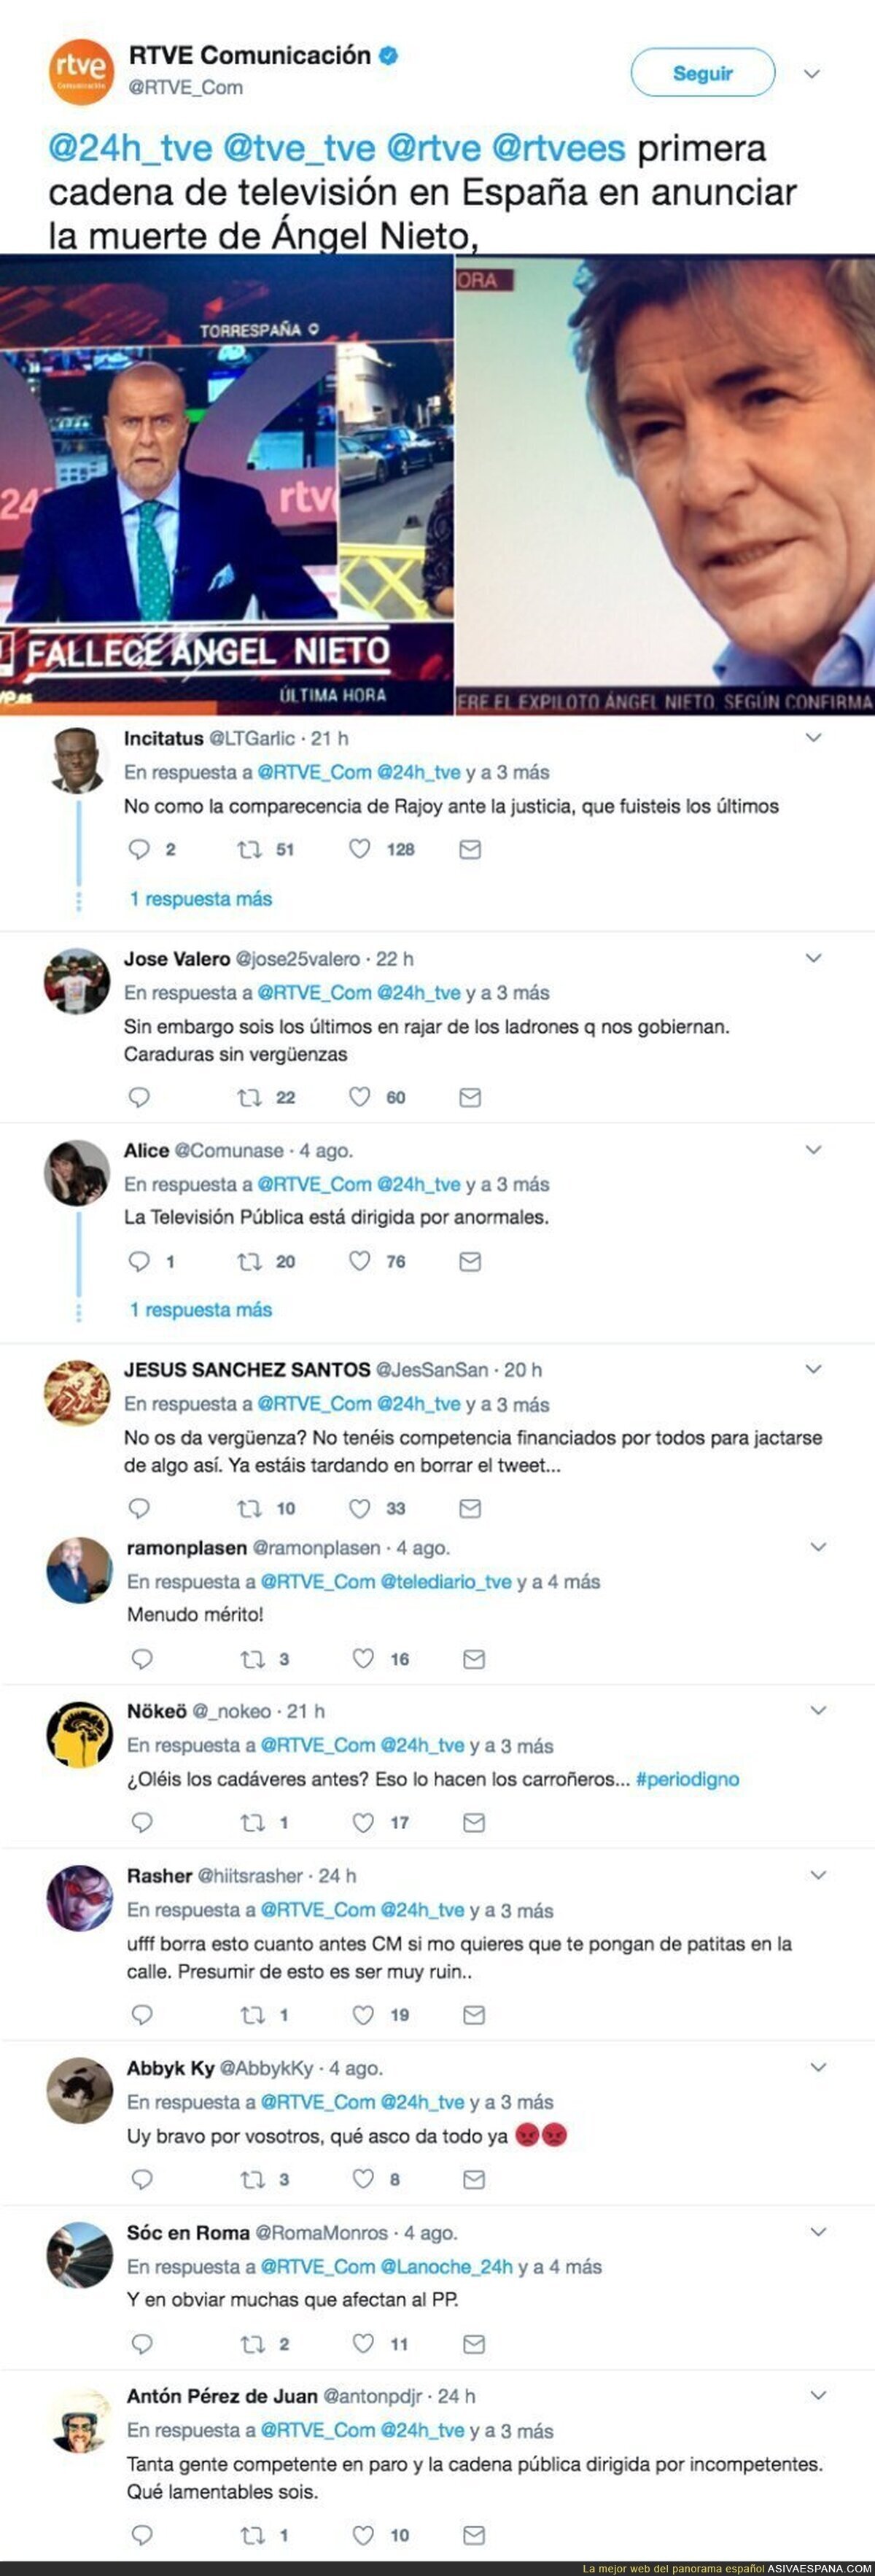 El polémico tuit de RTVE sobre la muerte de Ángel Nieto que ha indignado a todo el mundo